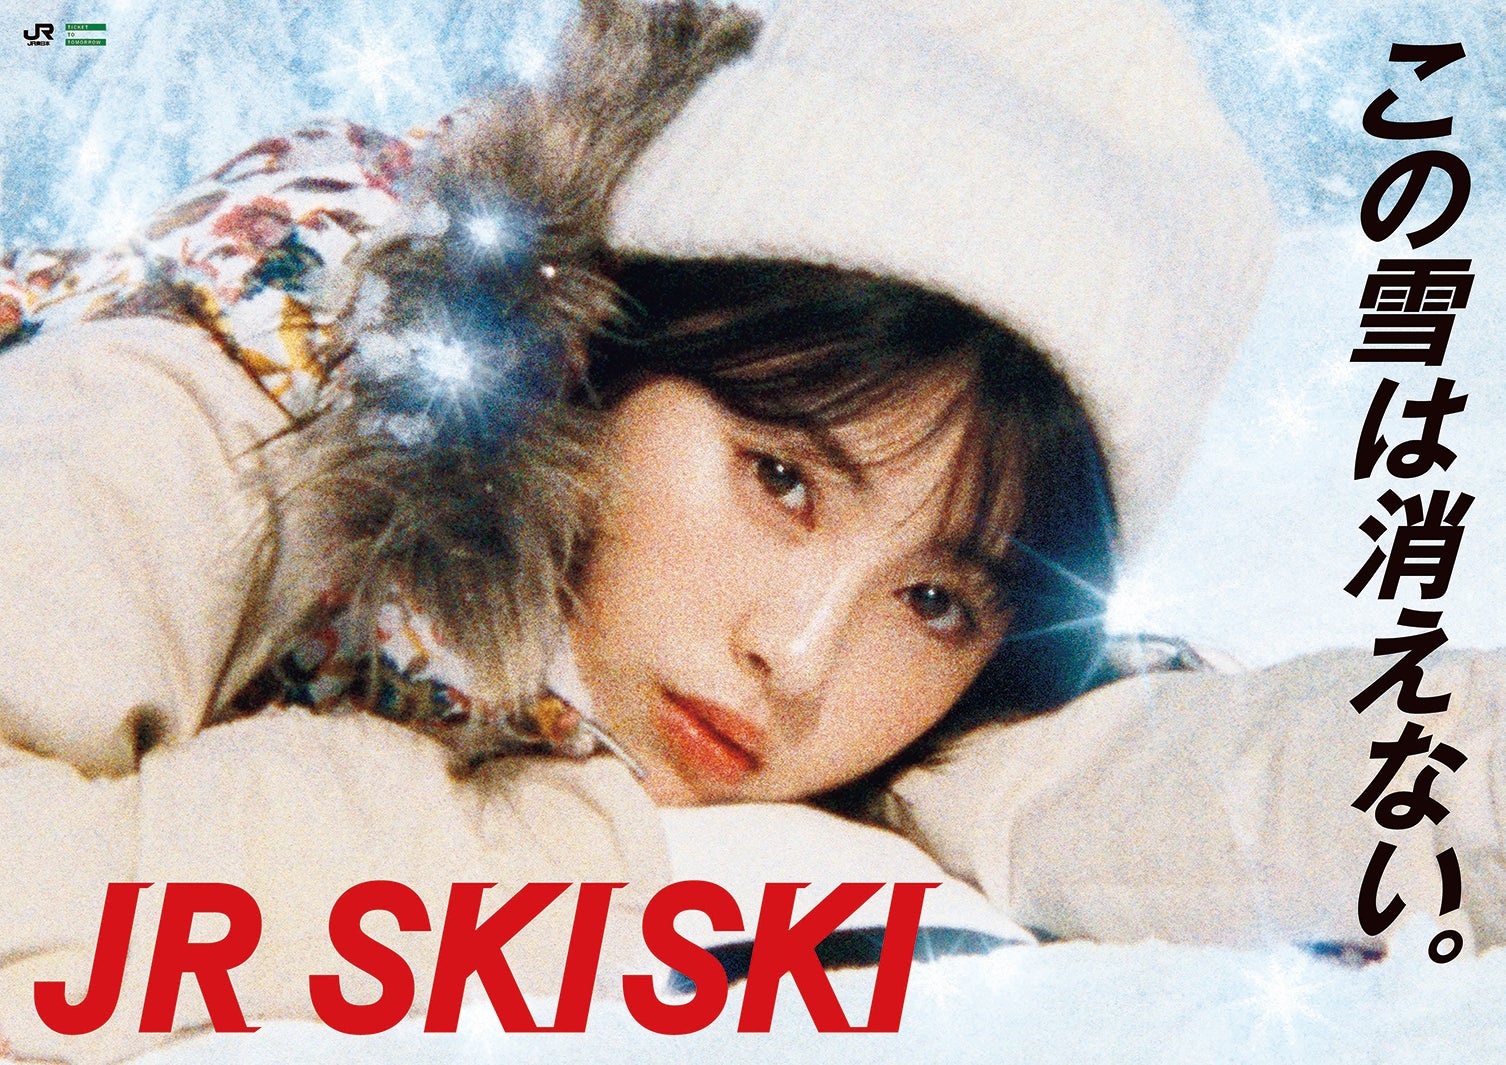 浜辺美波 Jr Skiski ヒロインに決定 岡田健史と男女ダブル主演 話題の 穴埋めキャッチコピー も発表 モデルプレス